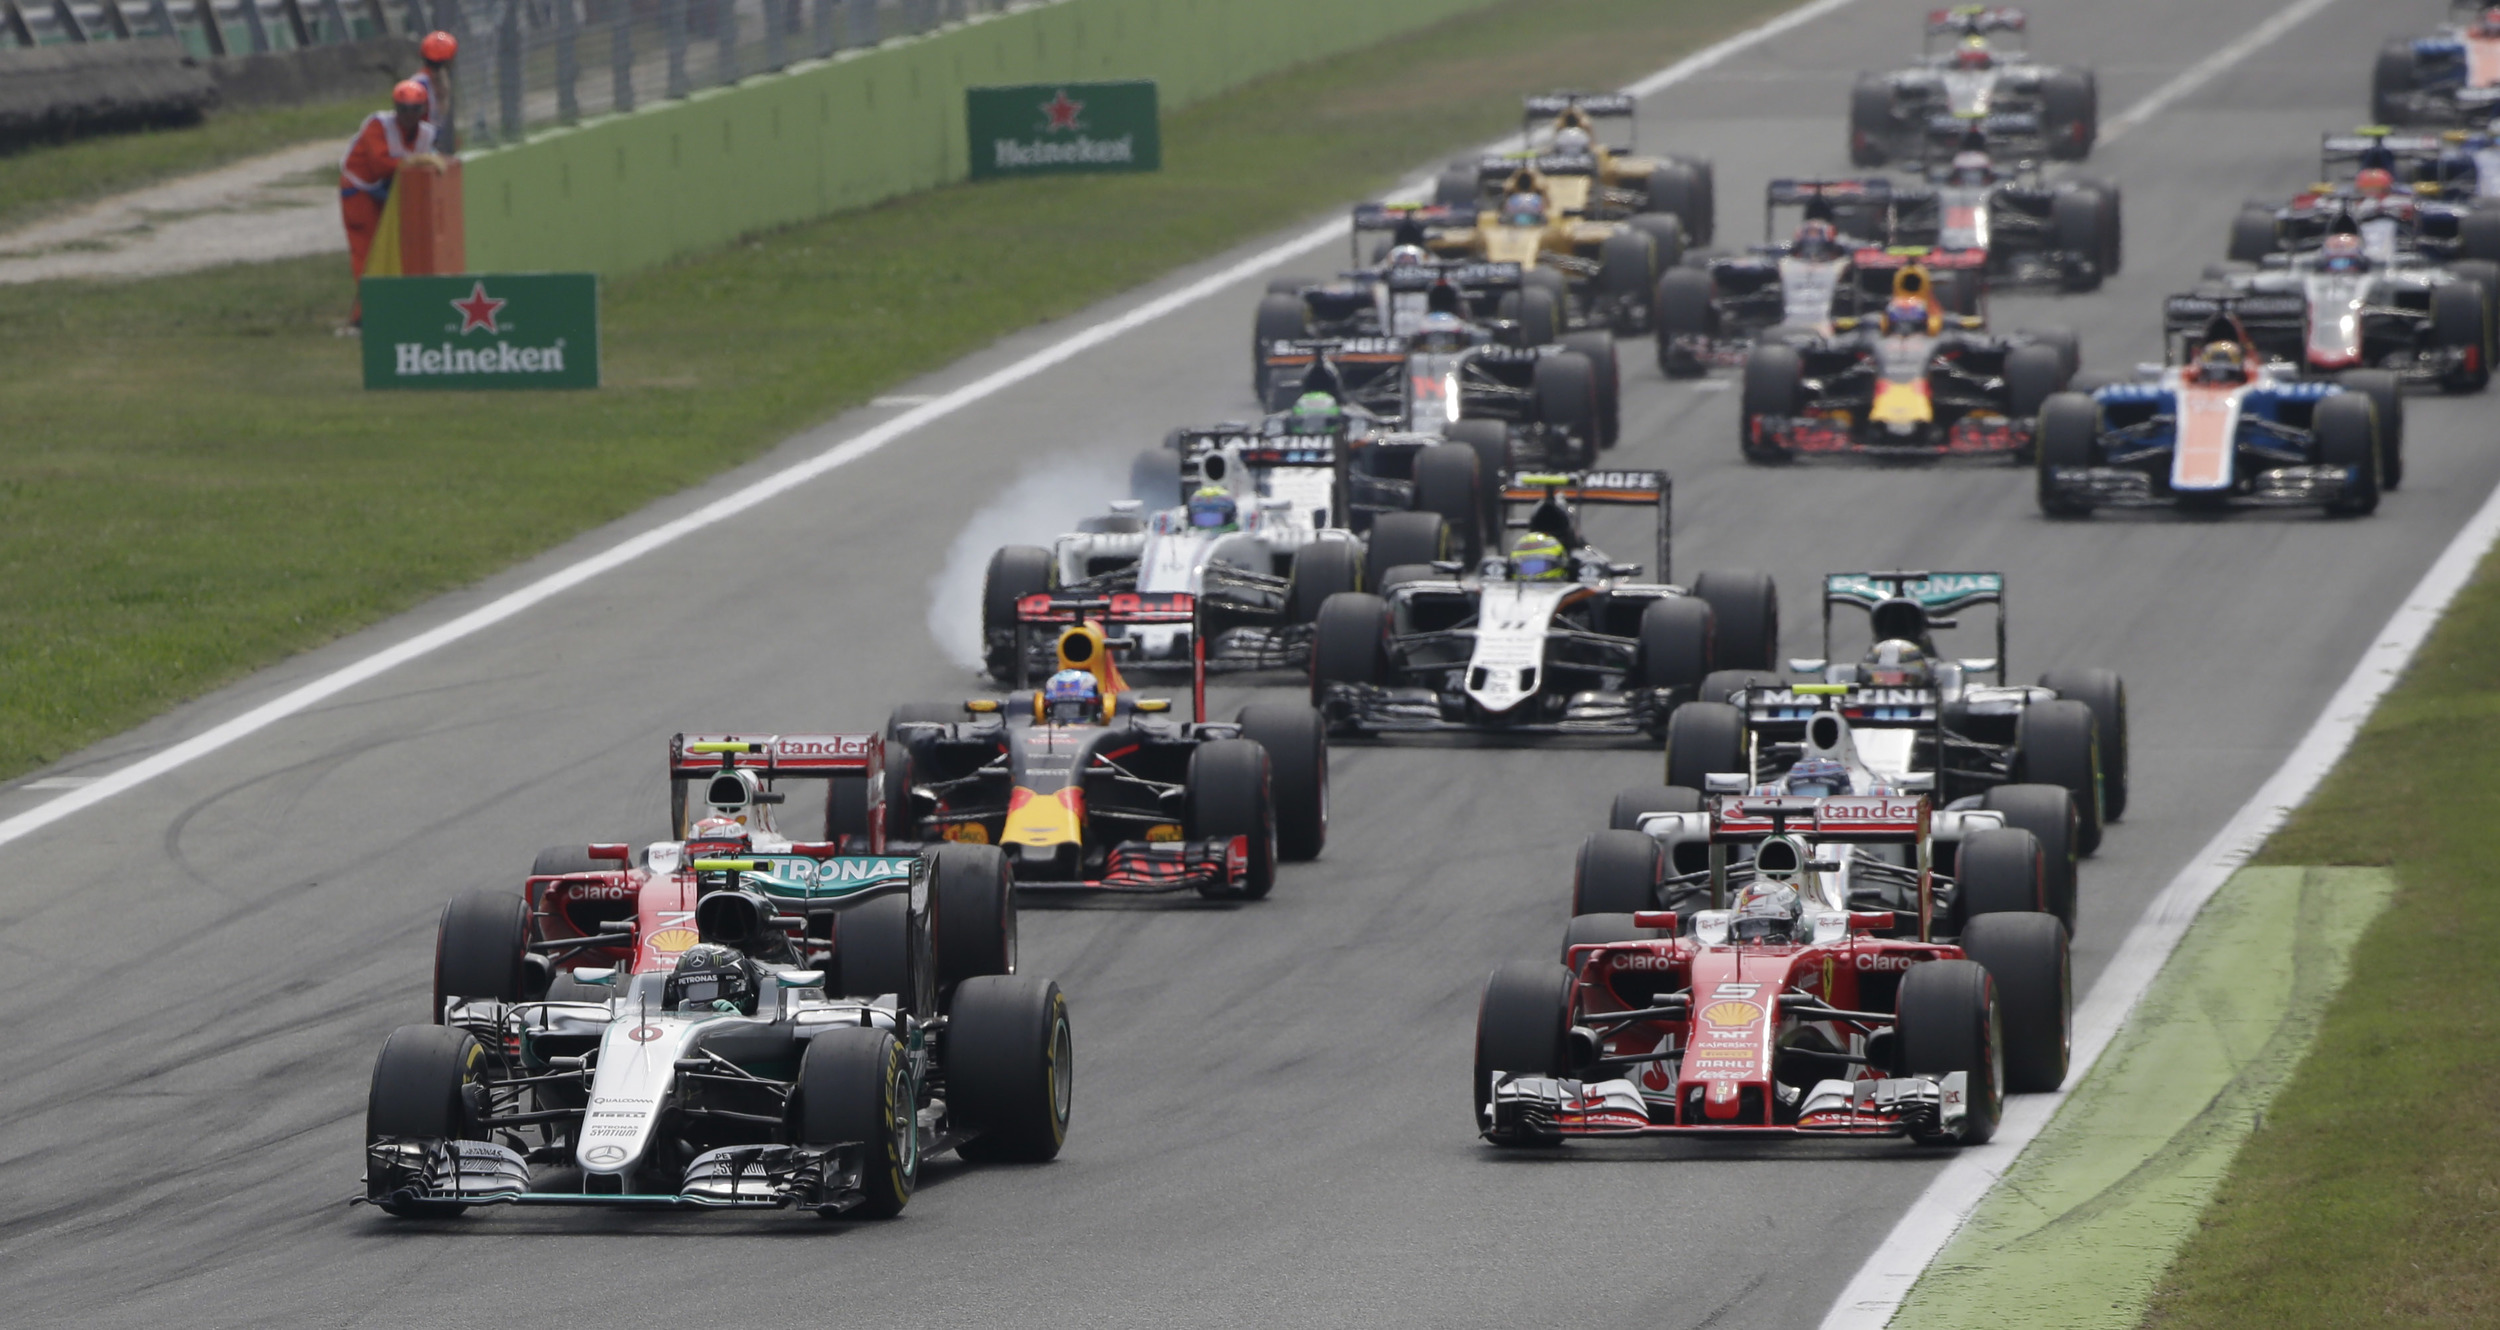 Comment voir le Grand Prix de Formule 1 d’Italie en direct live